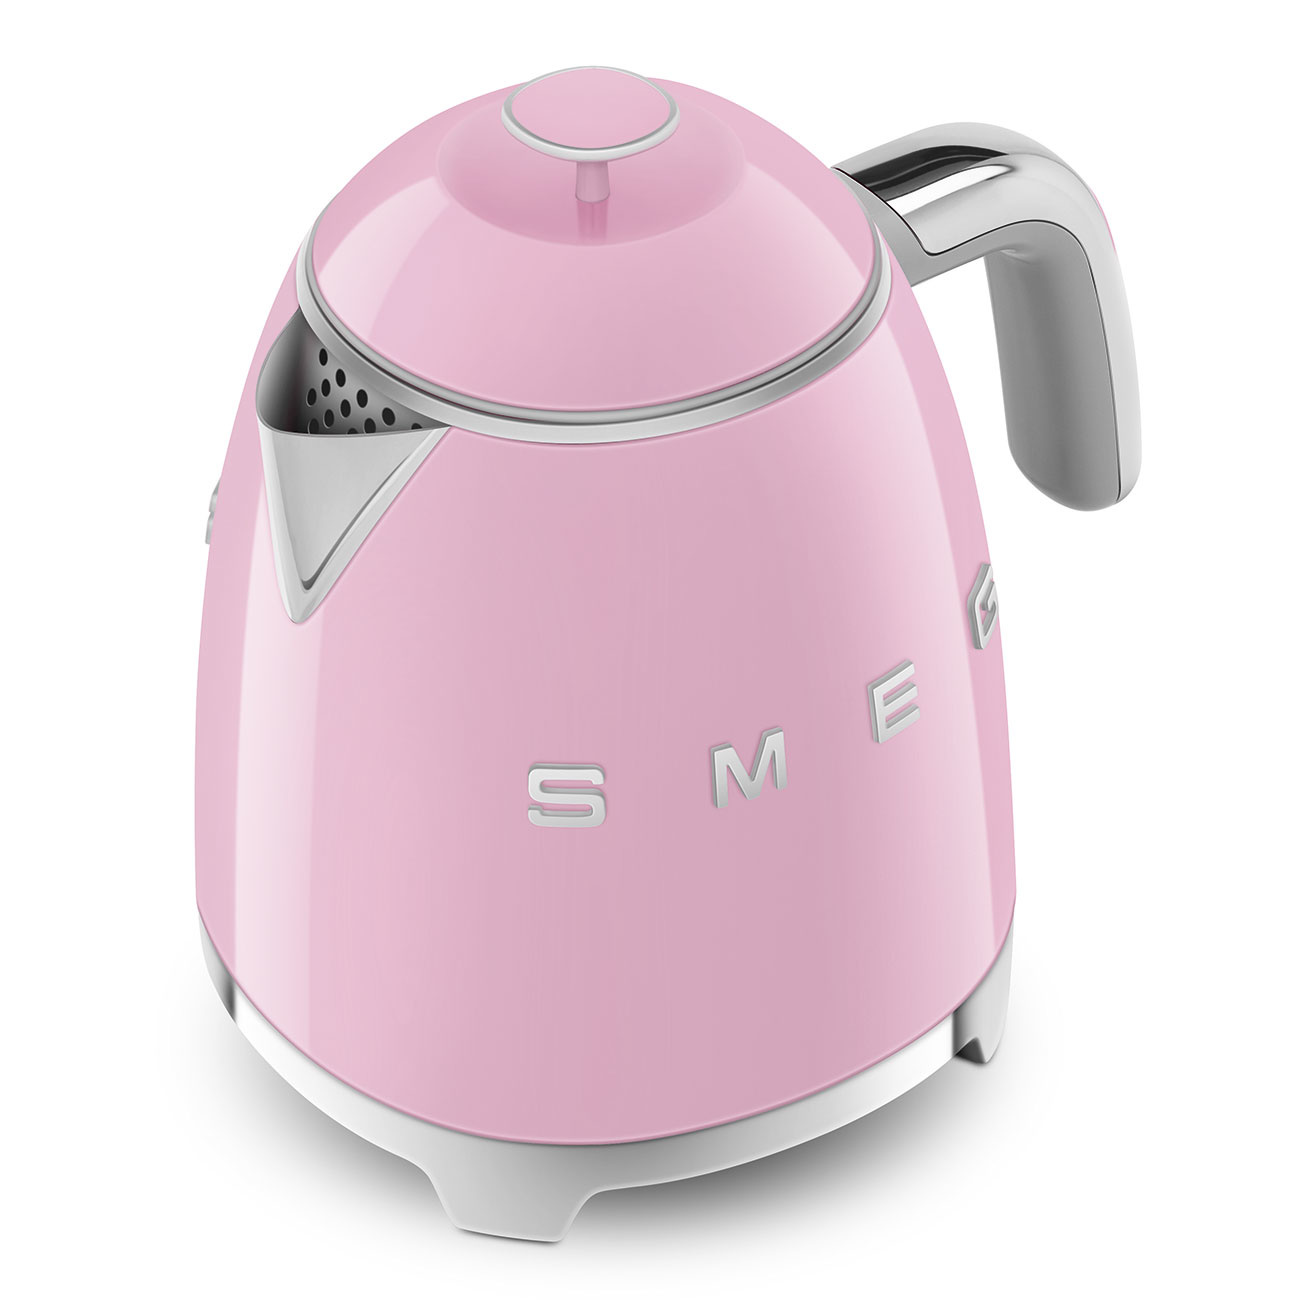 Smeg Smeg mini kettle - pink